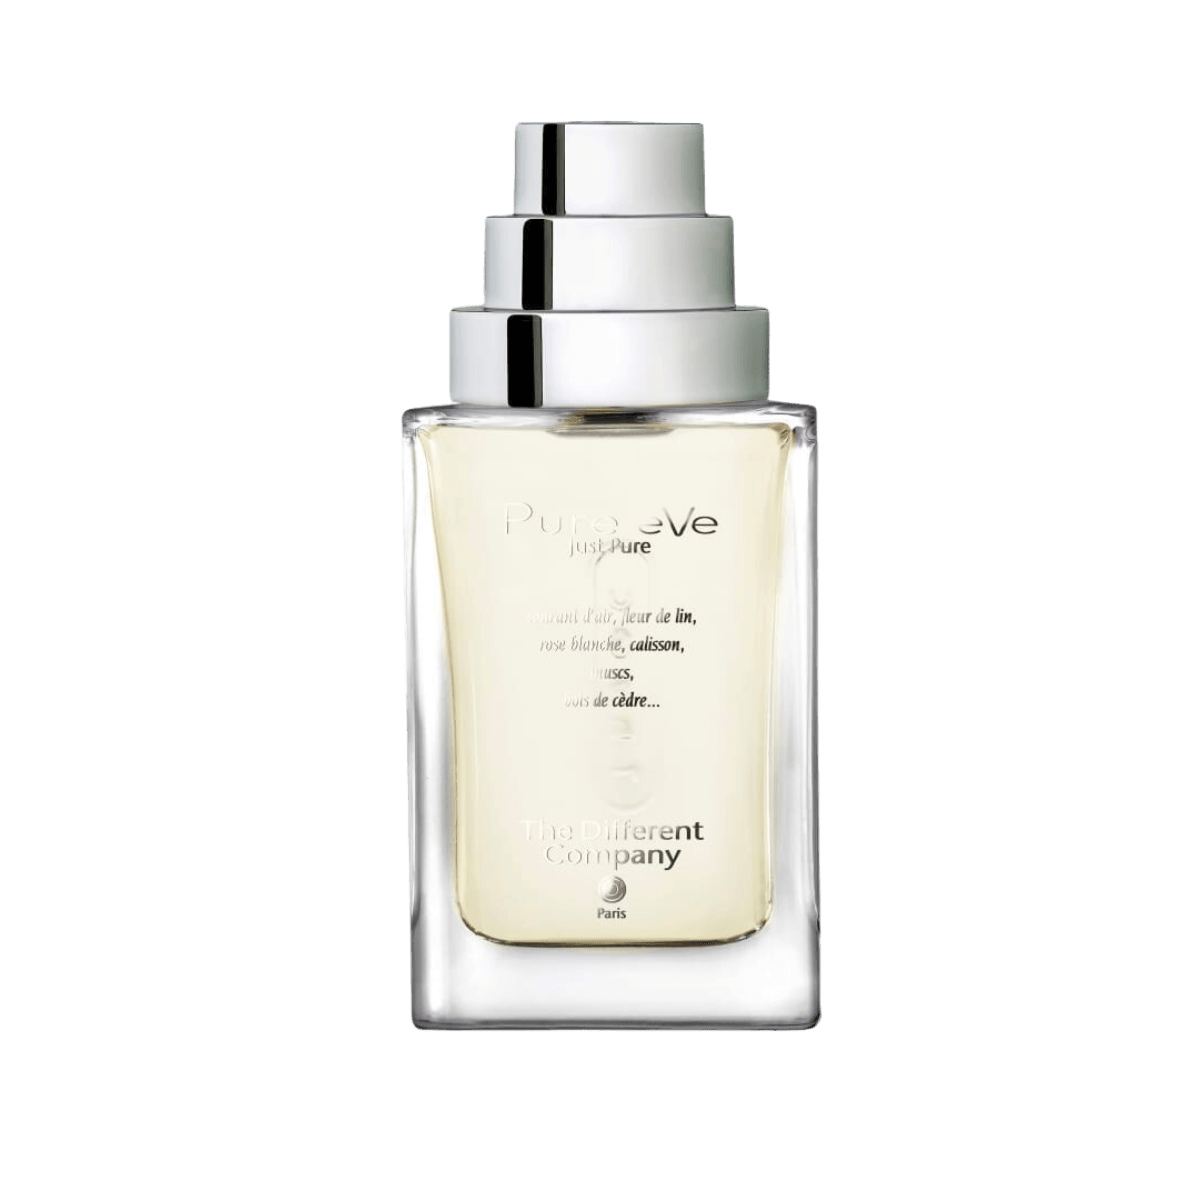 Afbeelding van het parfum Pure Eve eau de parfum 100 ml van het merk The Different Company